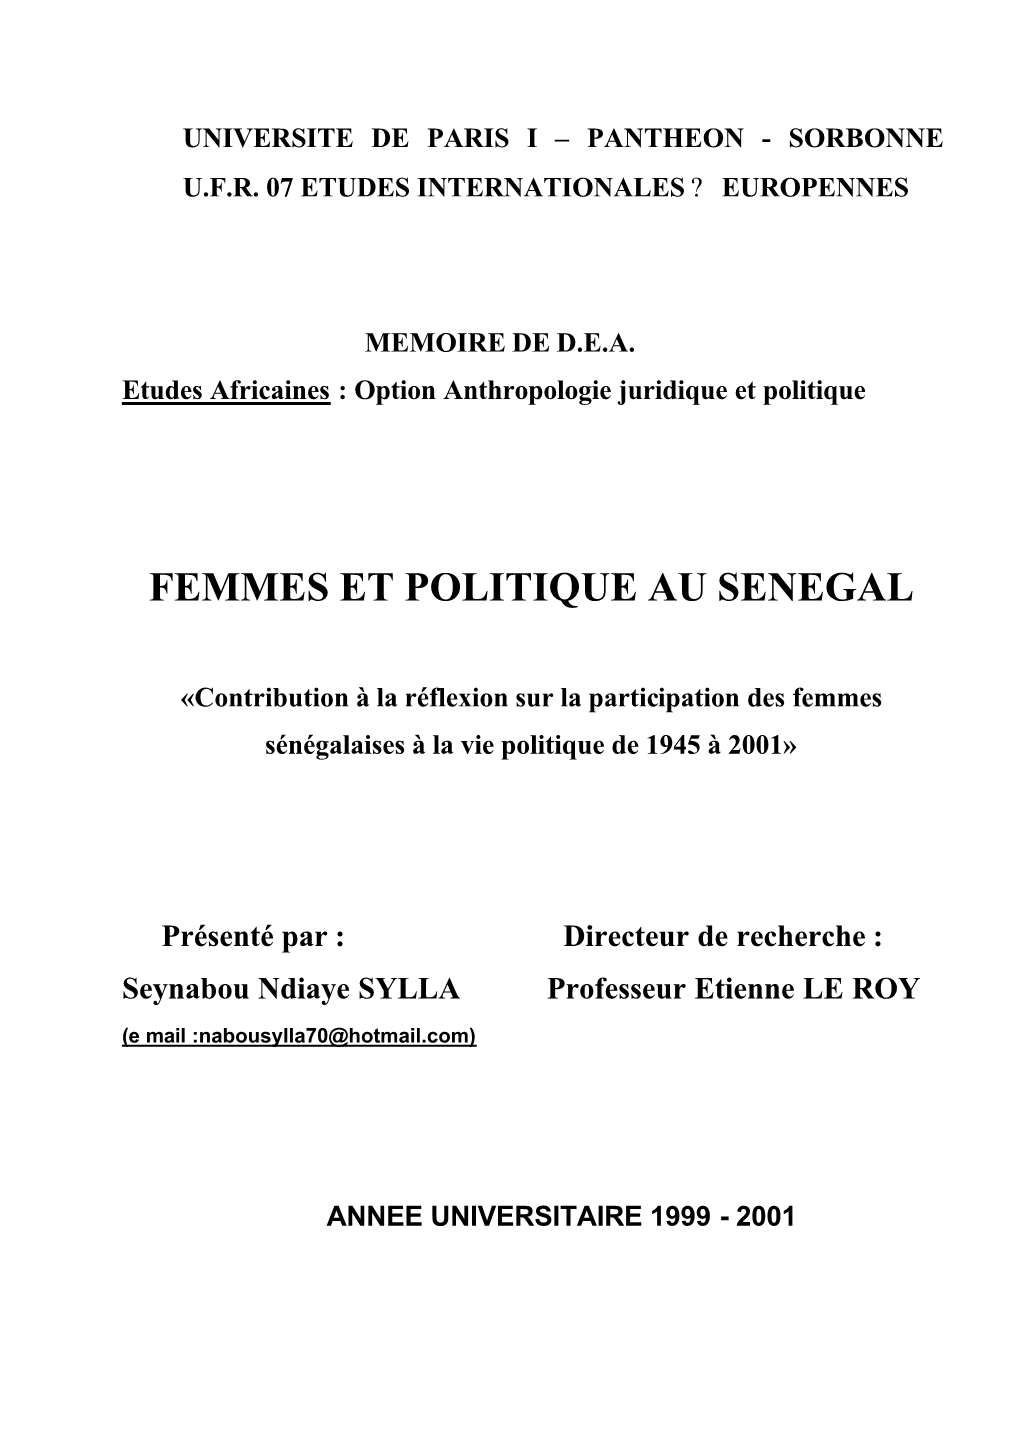 Femmes Et Politique Au Sénégal. Contribution À La Réflexion Sur La